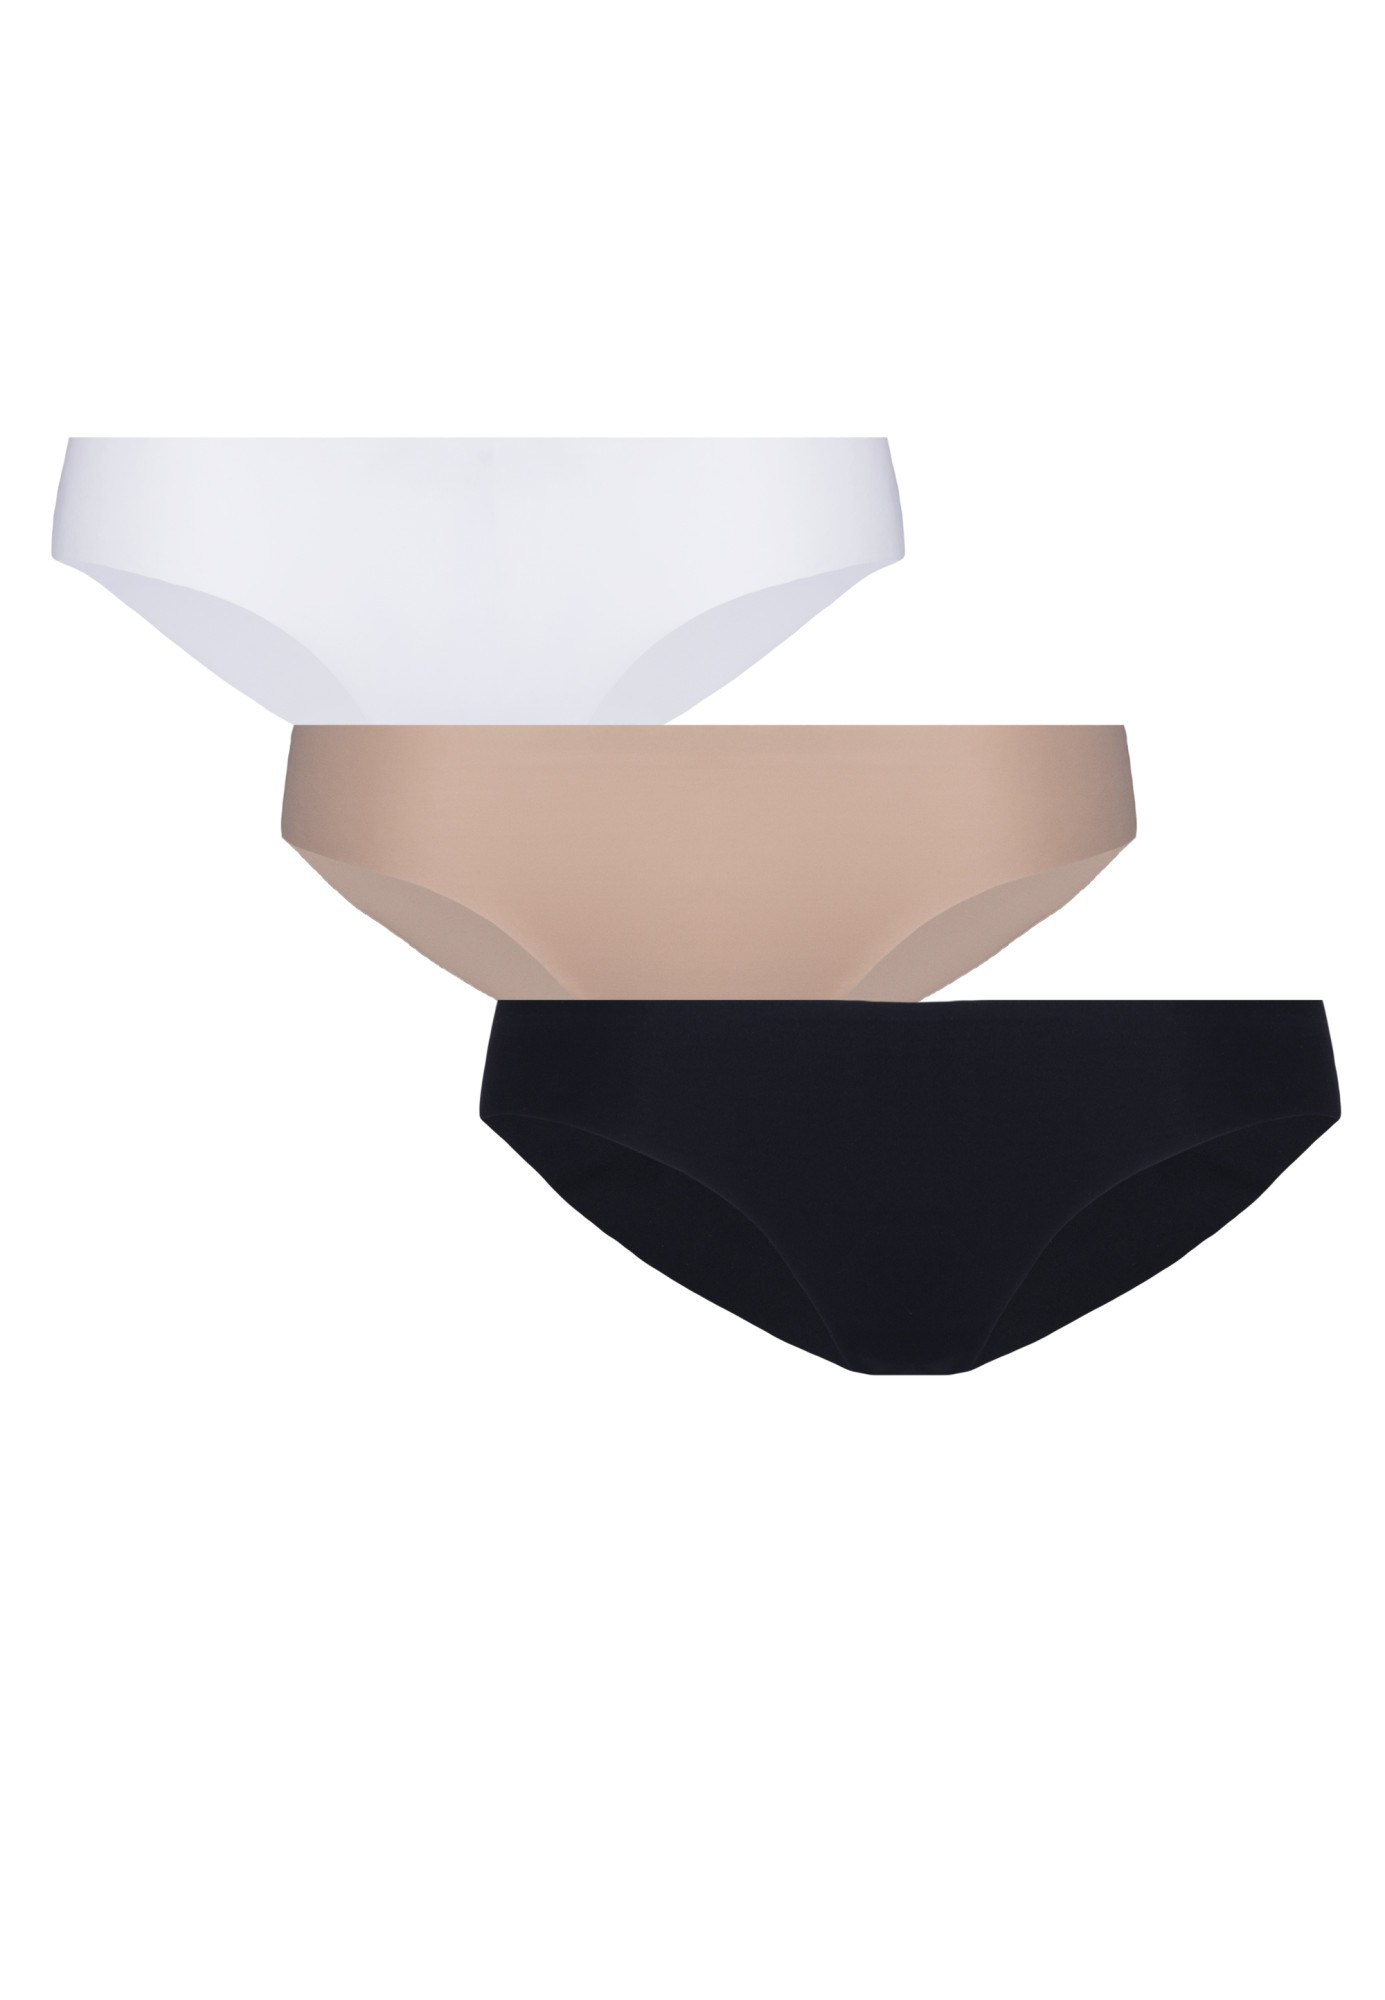 Eldar 3Pack Kalhotky Selena Černá/Bílá/Béžová XL